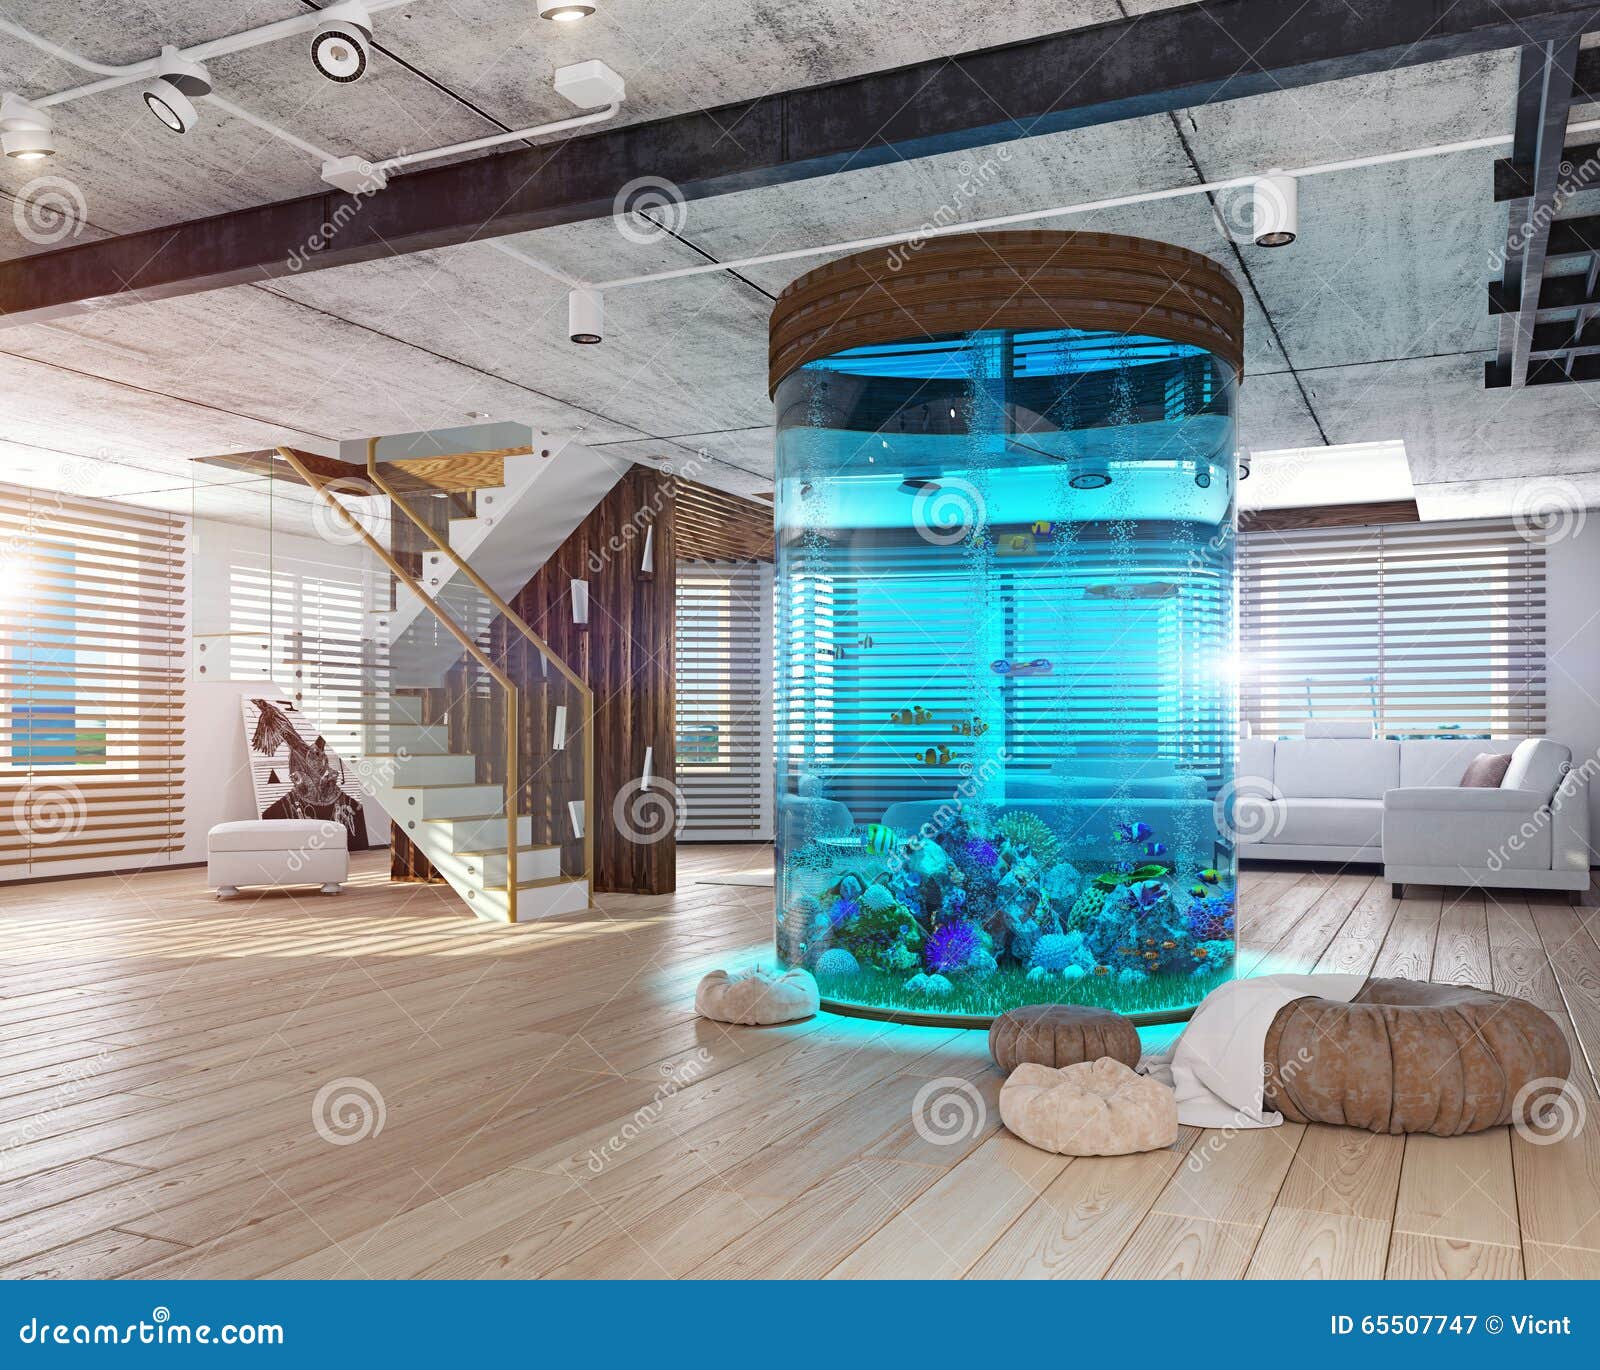 The Loft Interior With Aquarium Stock Illustration